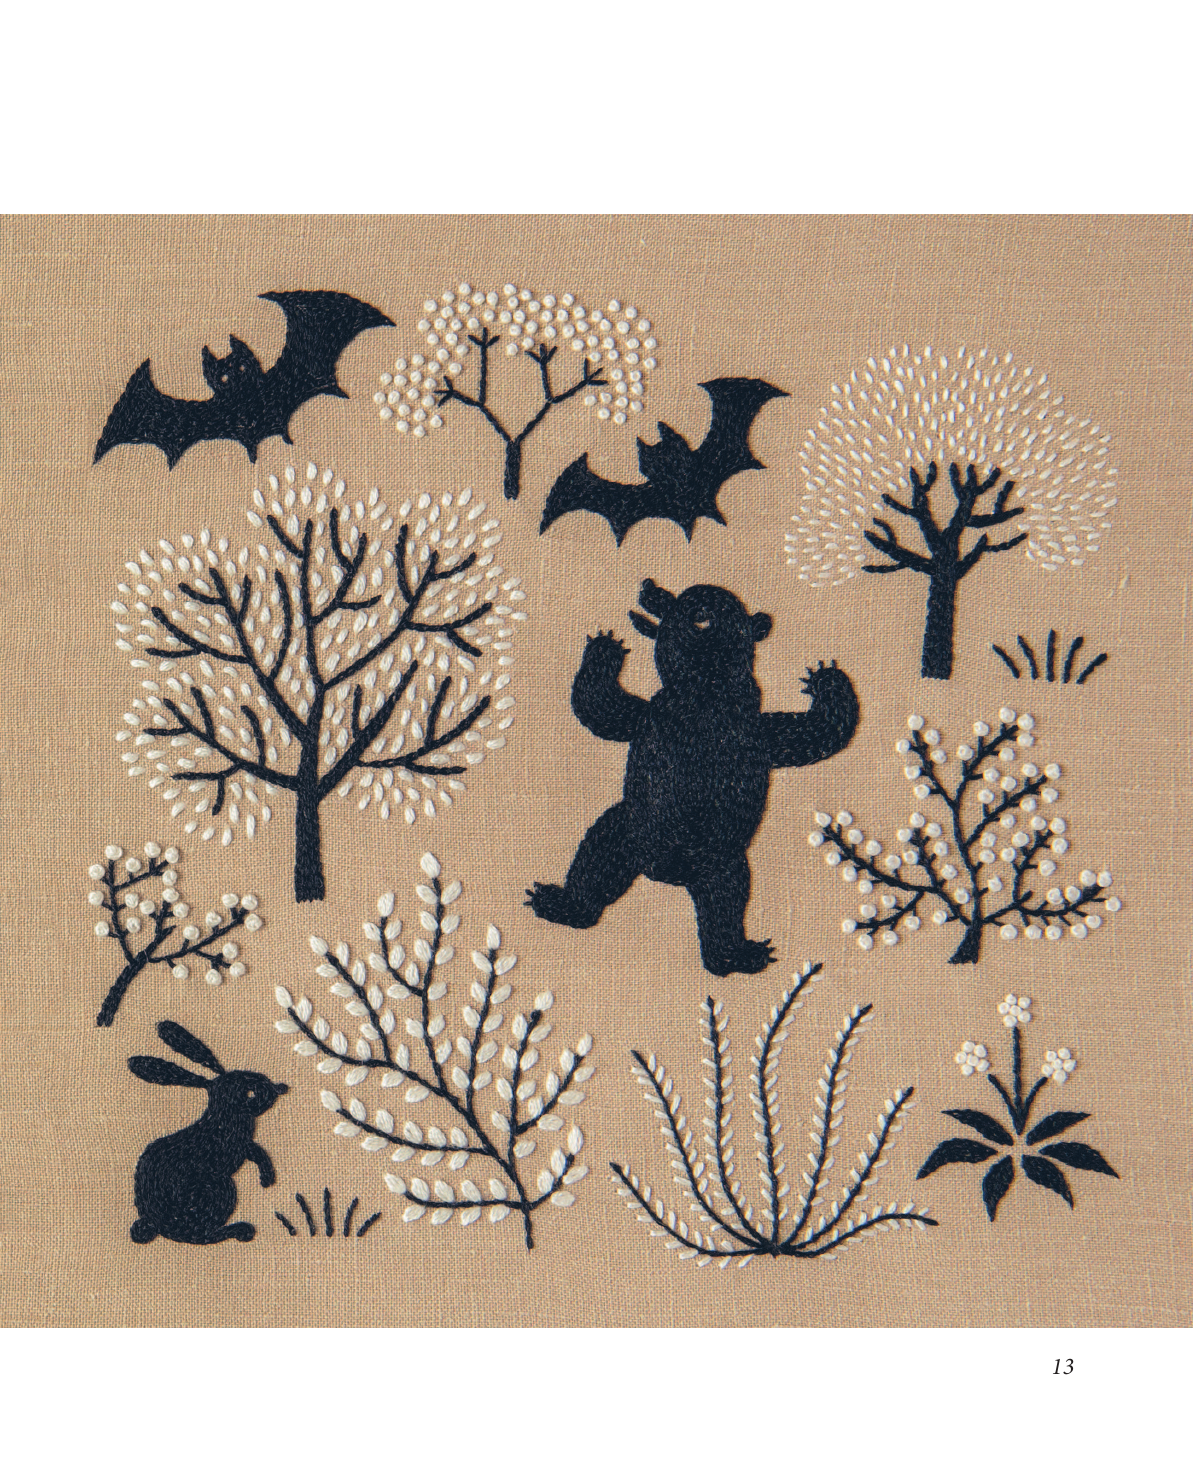 Вышивка Юмико Хигучи Анималистическая коллекция Простые и эффектные дизайны вышивки нитью мулине по льняной ткани 25 сюжетов с животными - фото №12